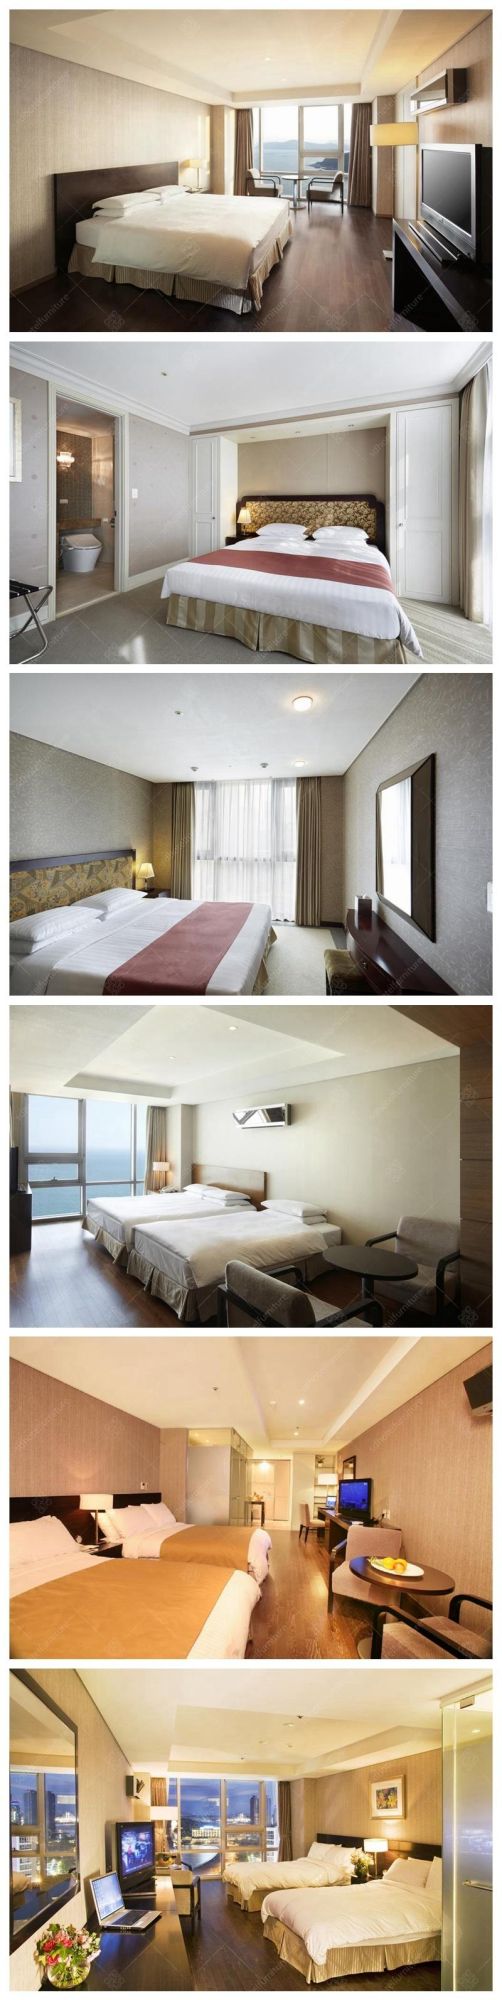 Simple Design Hotel Bedroom Furniture Sets for 4-5 Stars Hotel